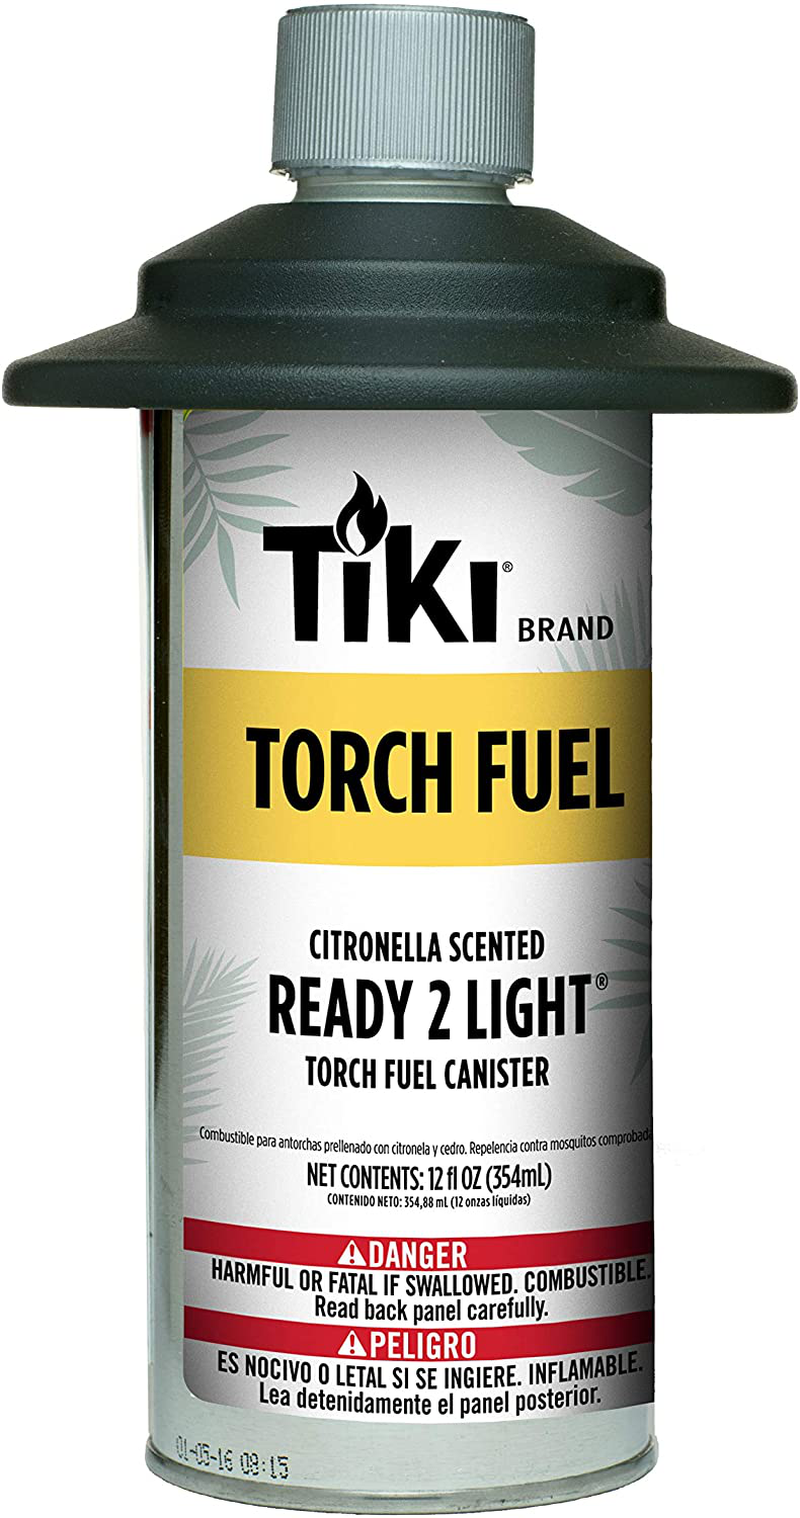 Tiki Brand Citronella Scented Torch Fuel, 50 Ounces